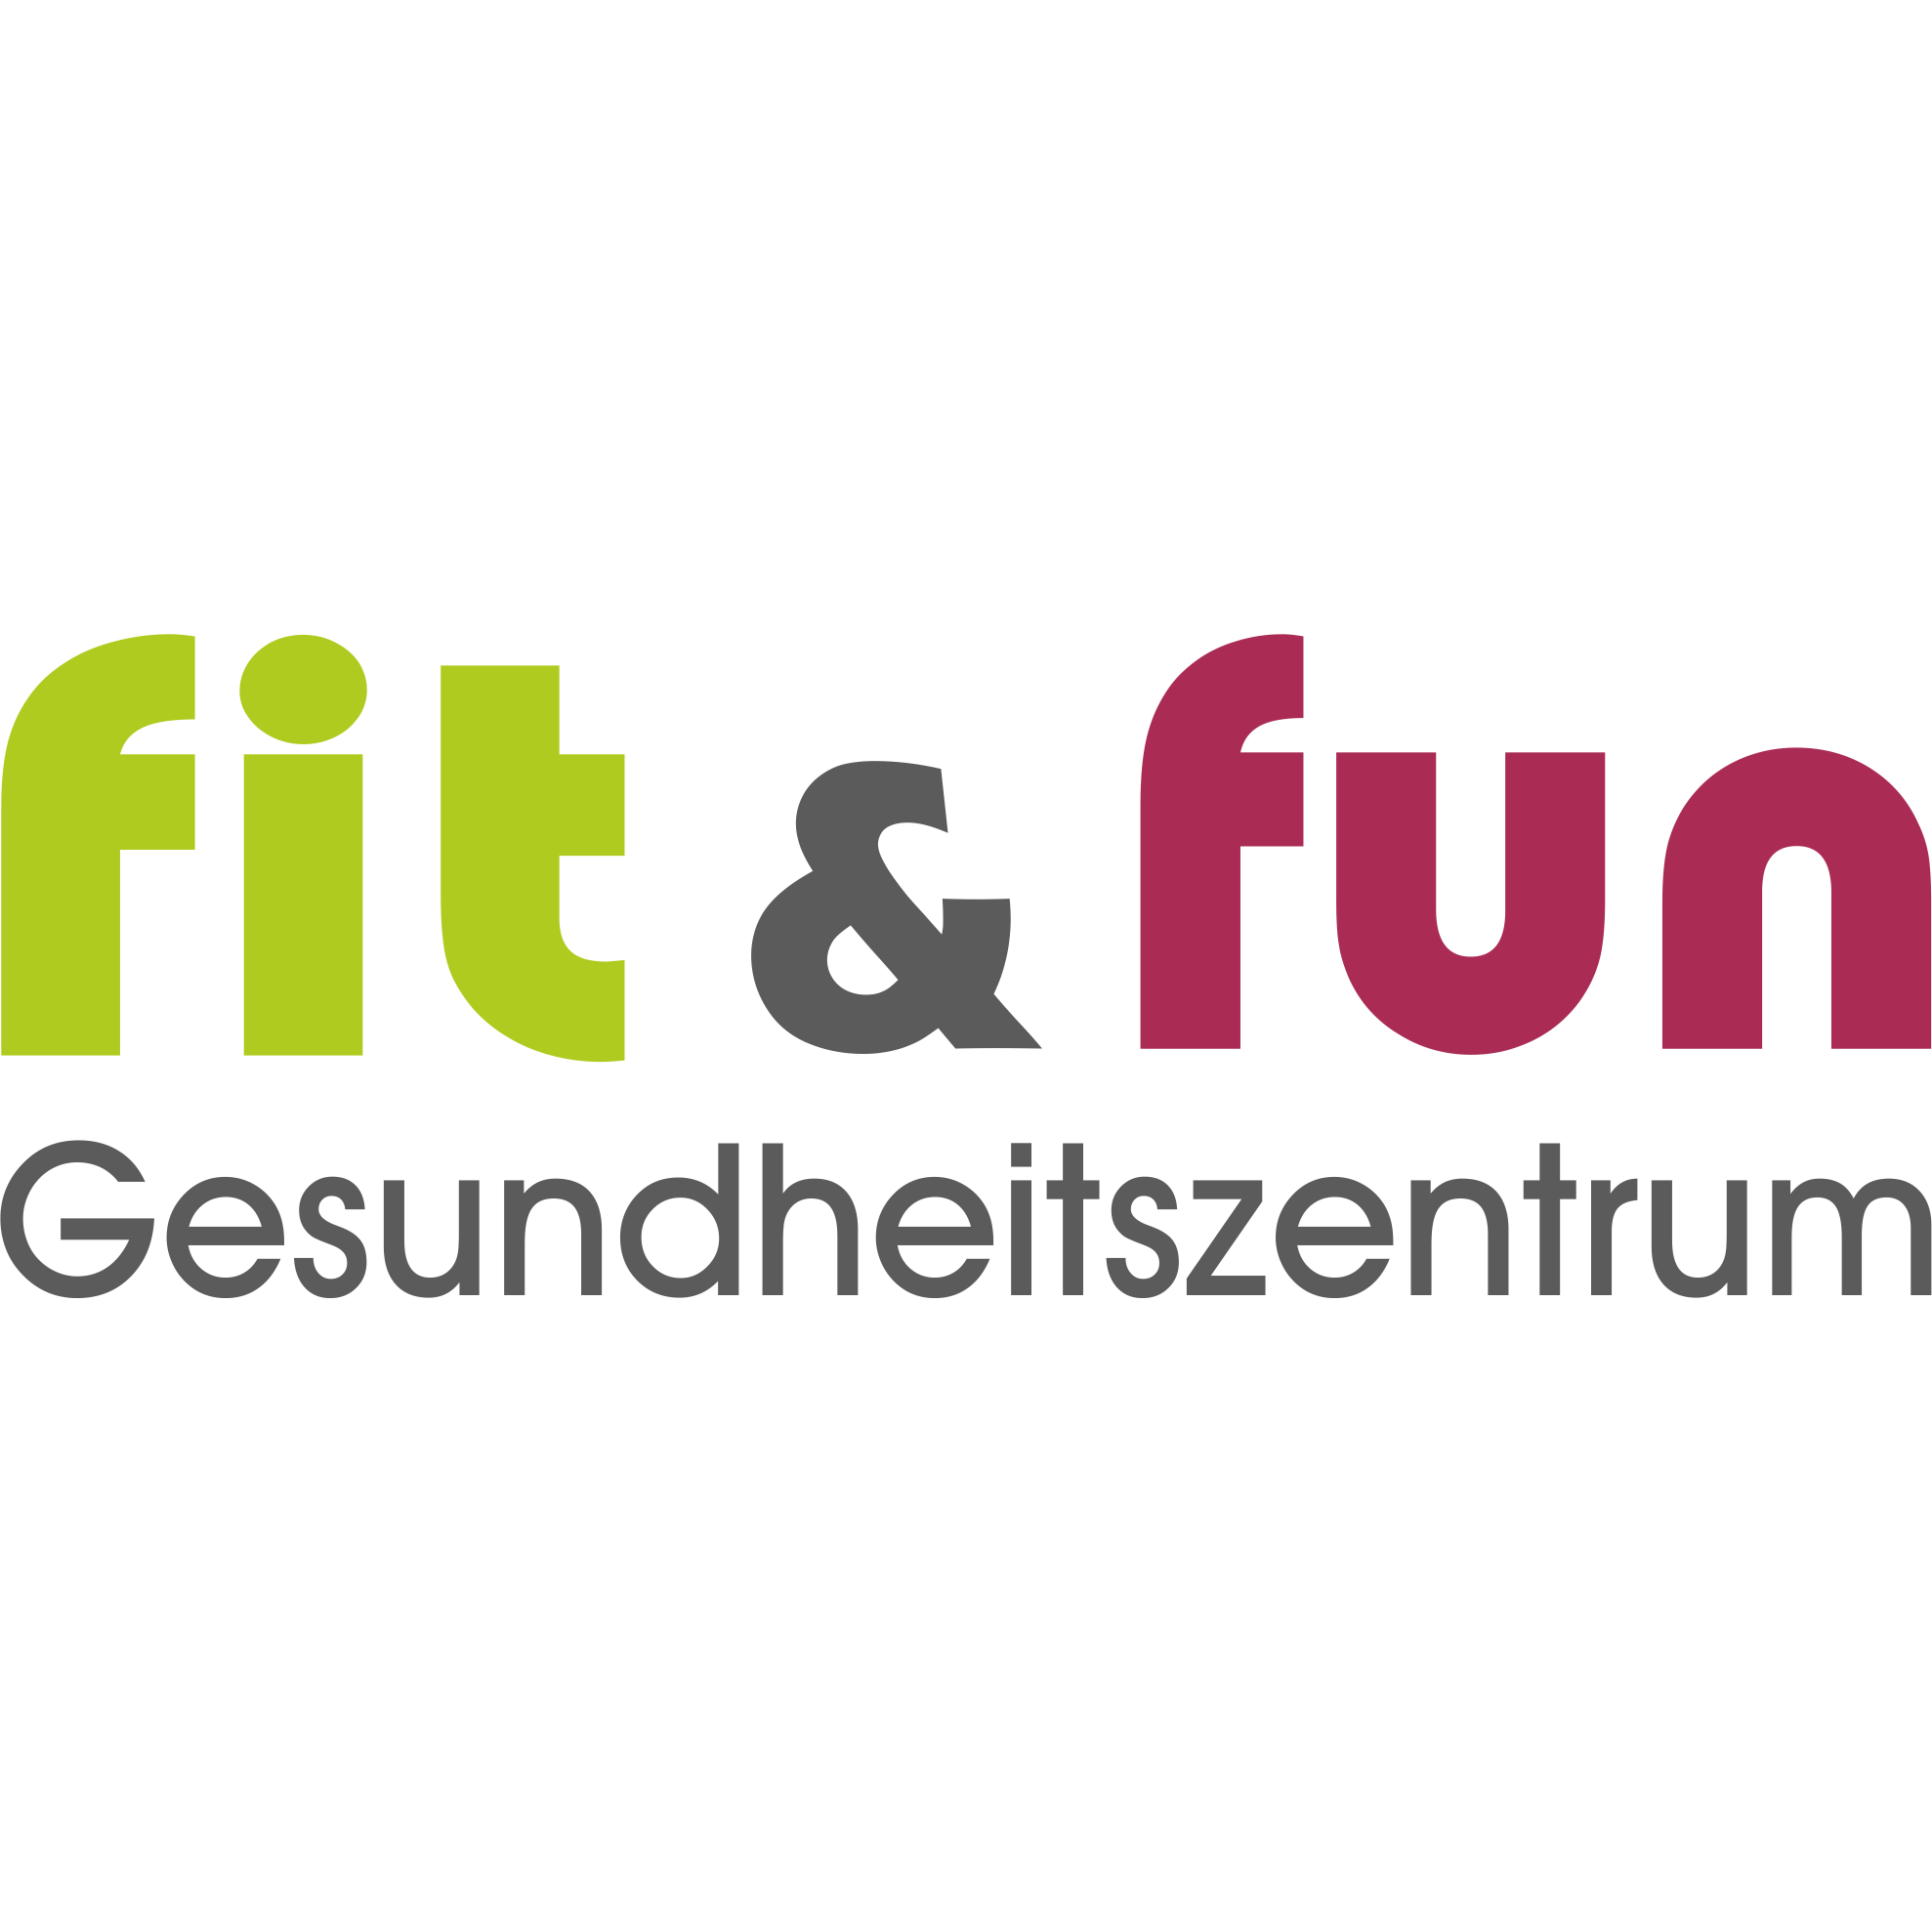 Gesundheitszentrum Fit & Fun Bechhofen in Bechhofen an der Heide - Logo